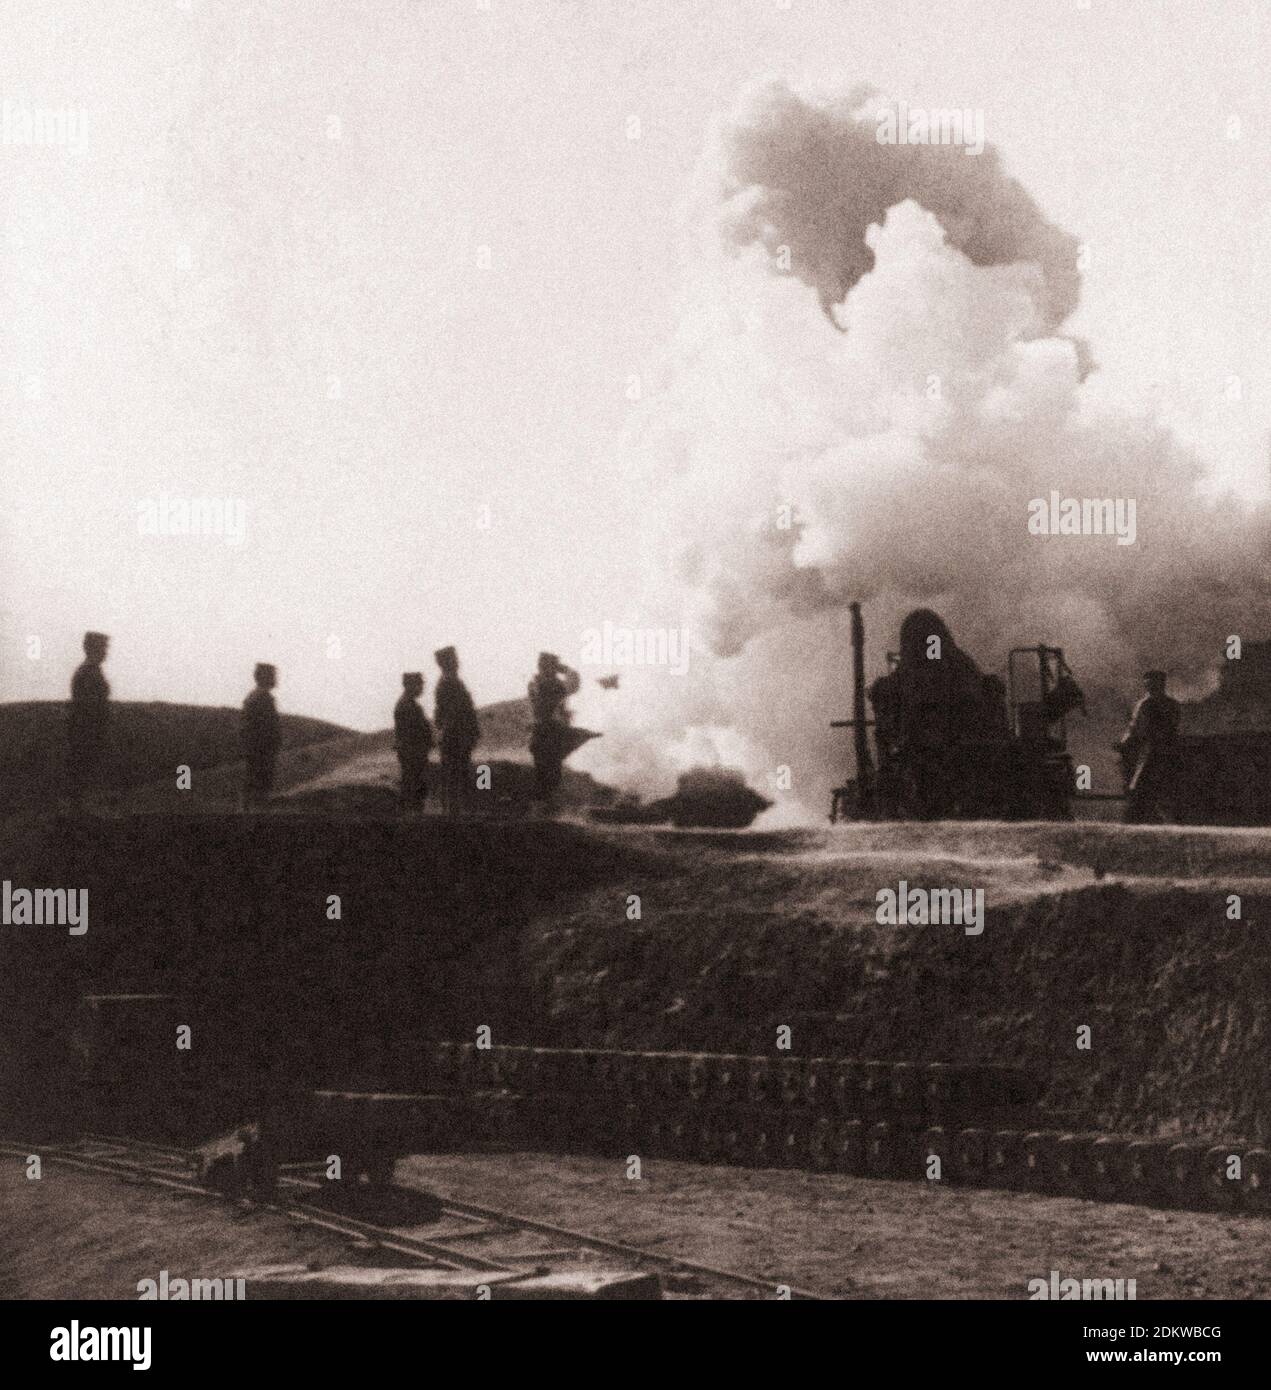 Enorme 11-Zoll-Shell von japanischen Belagerungsgewehr, Beginn seiner tödlichen Flug in Port Arthur. China. Russisch-Japanischer Krieg 1904-1905 Stockfoto